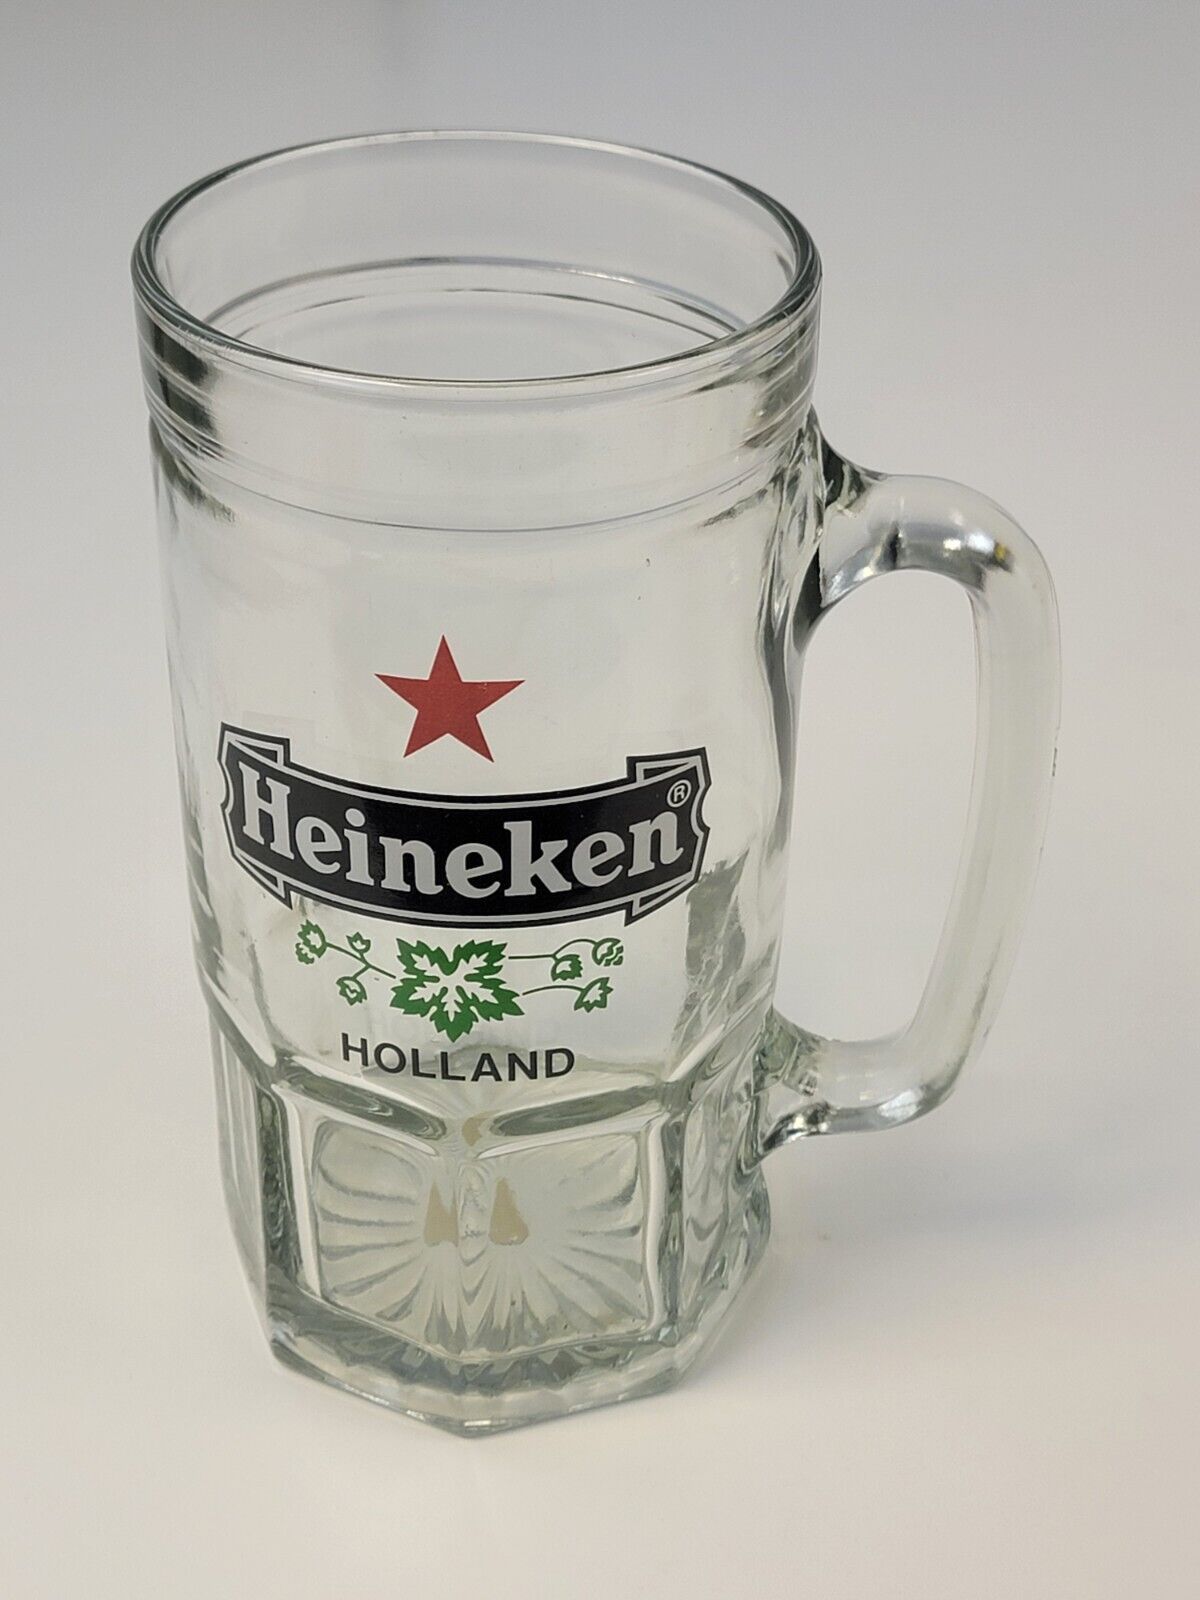 Heineken Big Glass Beer Mug Pressed Crystal Phoenicia Made in Israel VERY RARE